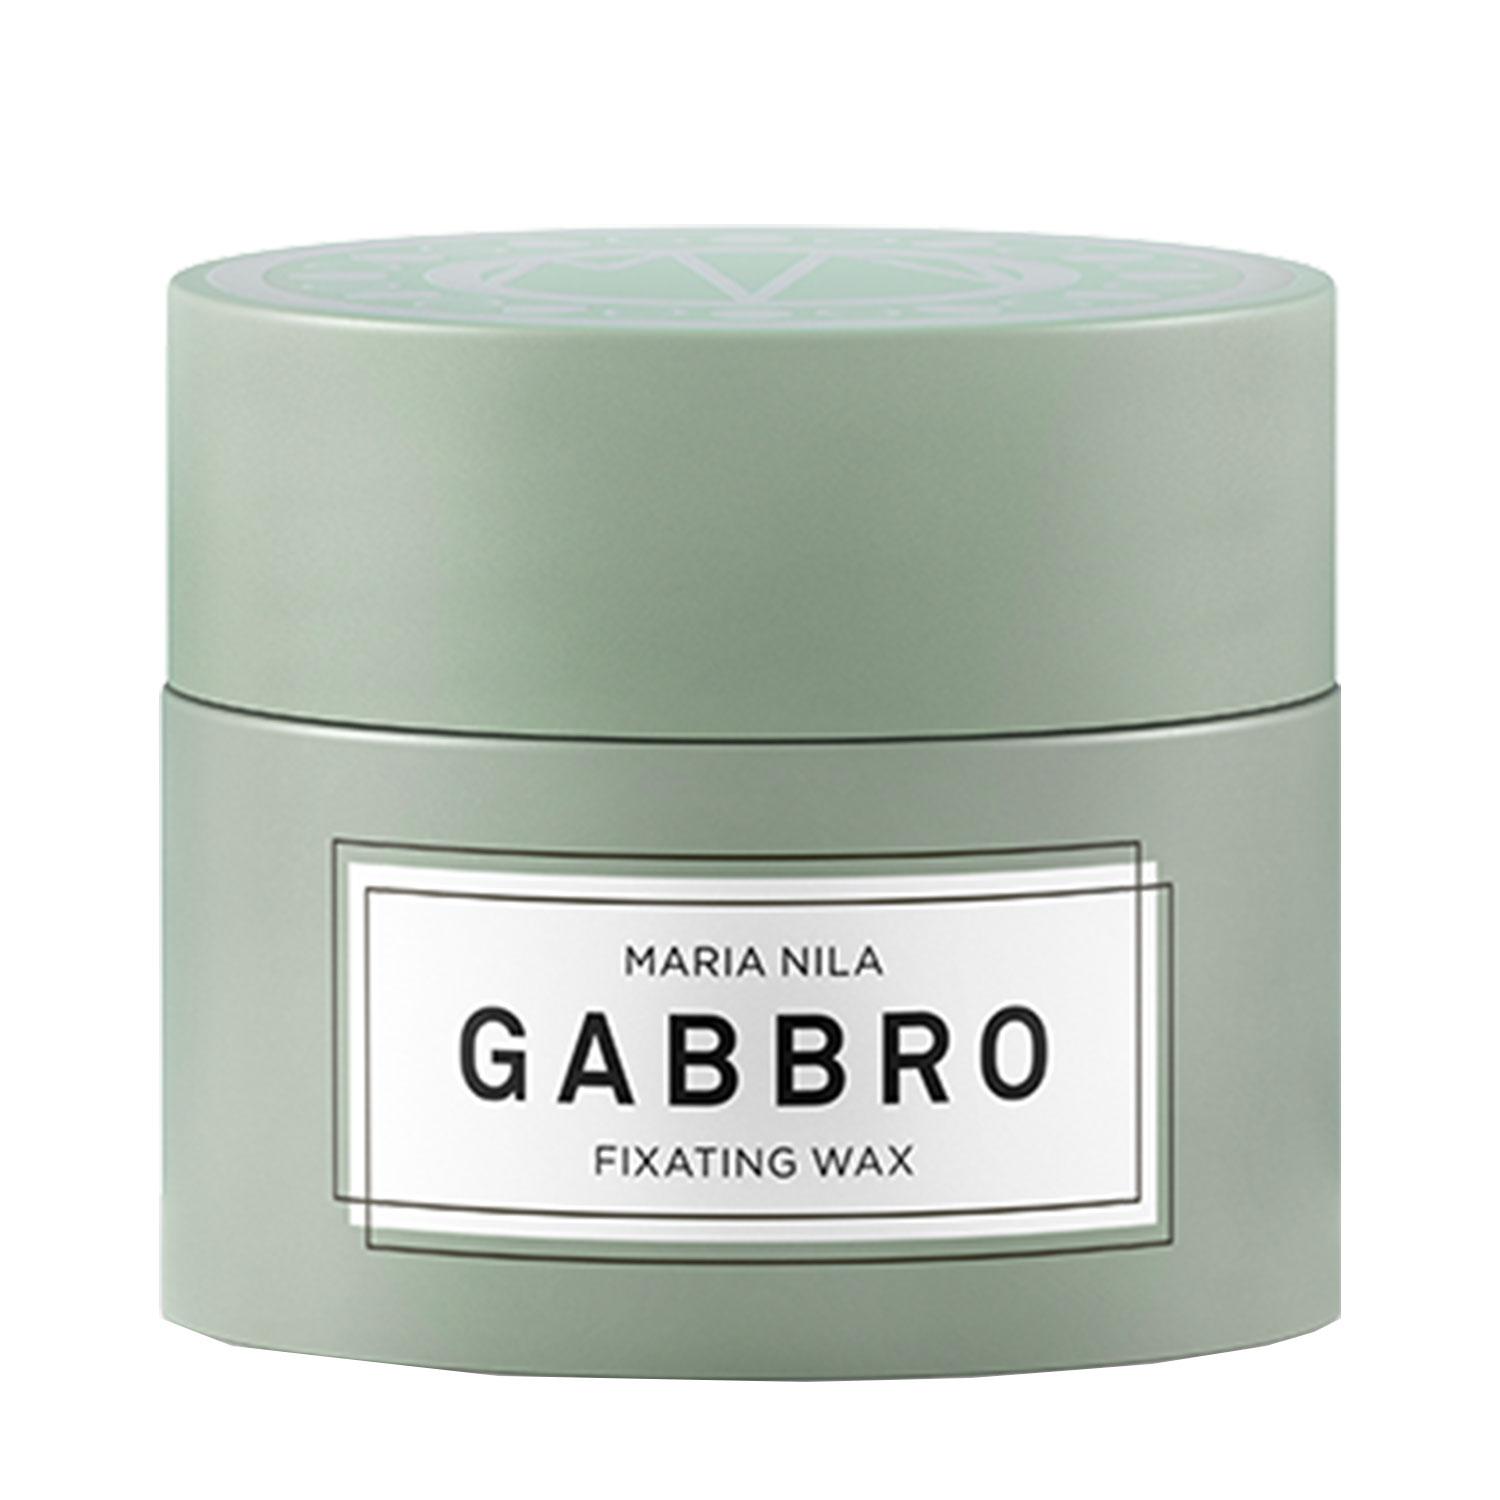 Minerals - Gabbro Fixating Wax